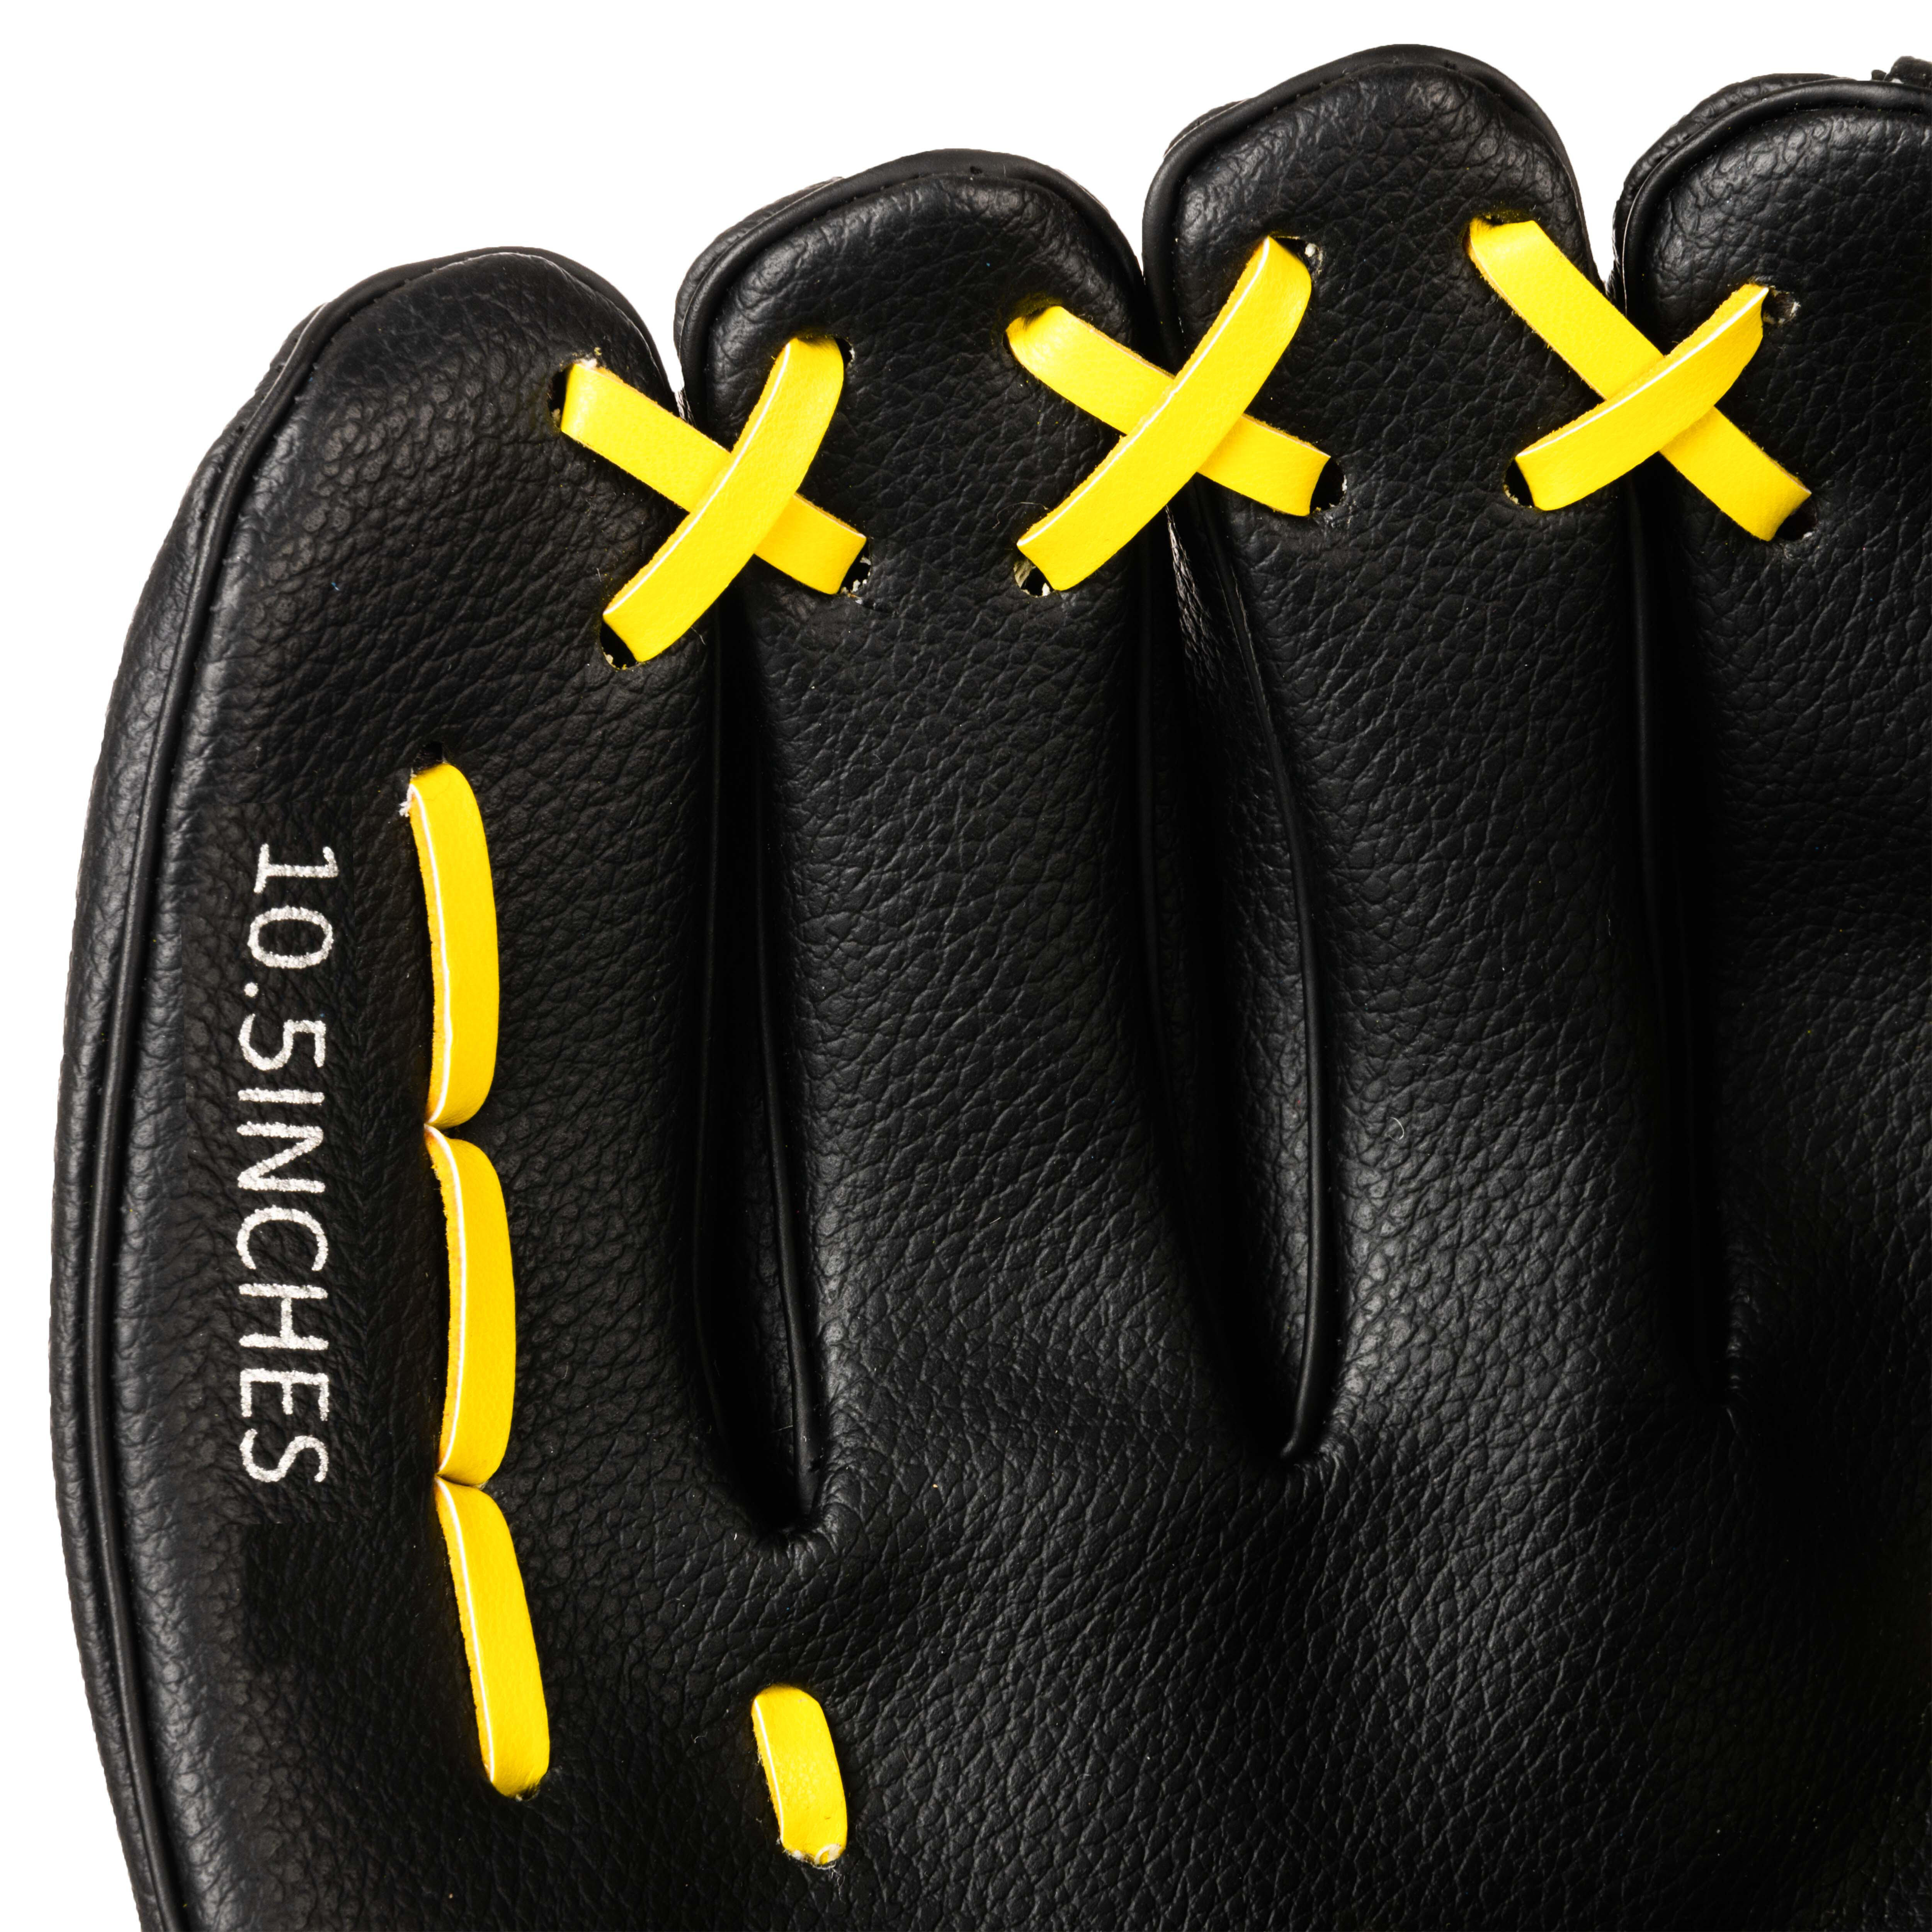 Gant de baseball gaucher - BA 100 noir/jaune - KIPSTA